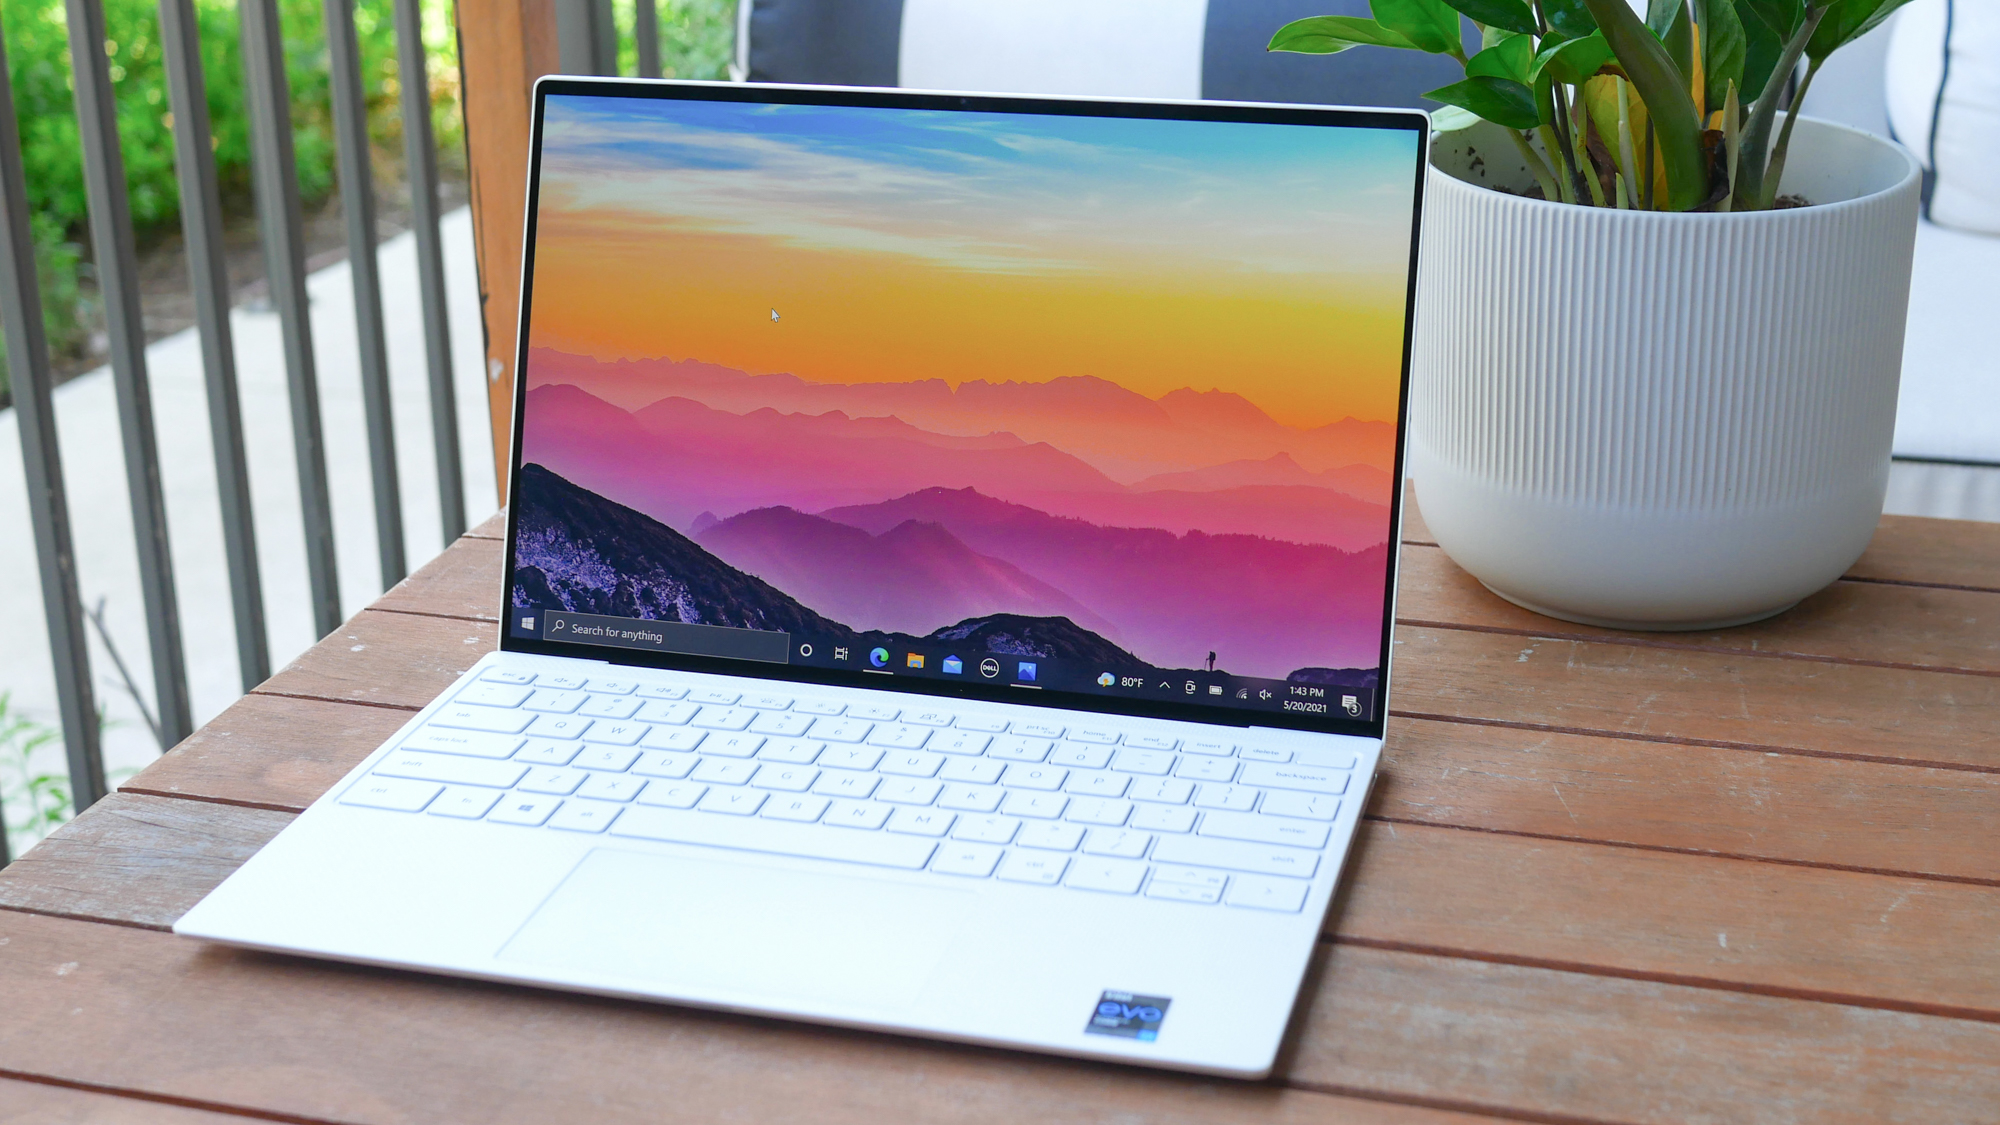 inhoudsopgave kopen verdund Best 13-inch laptop in 2022 | Laptop Mag